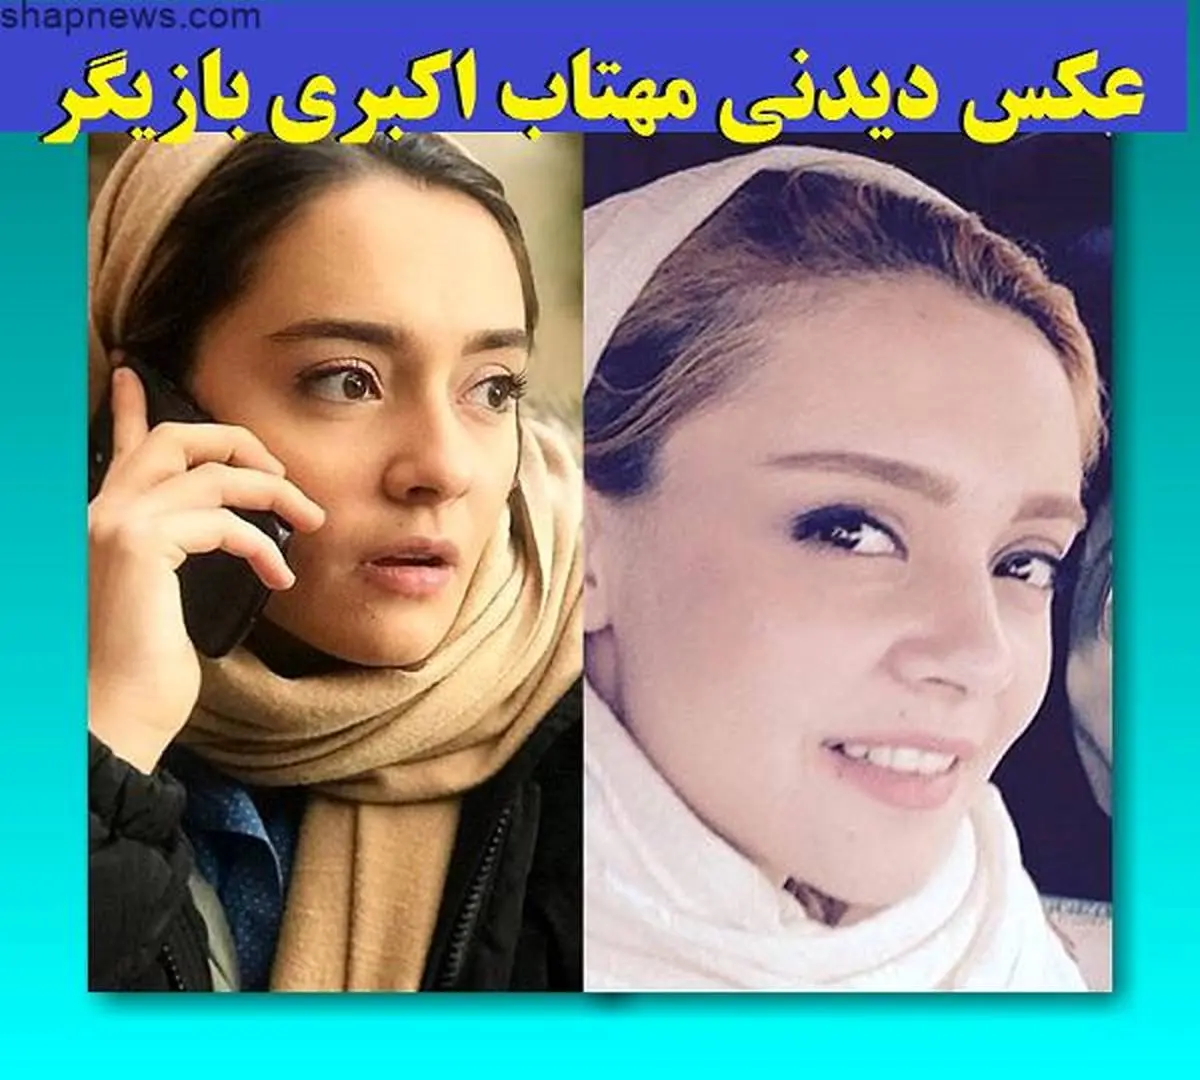 مهتاب اکبری بازیگر نقش سوگند کیست + بیوگرافی وتصاویر جدید